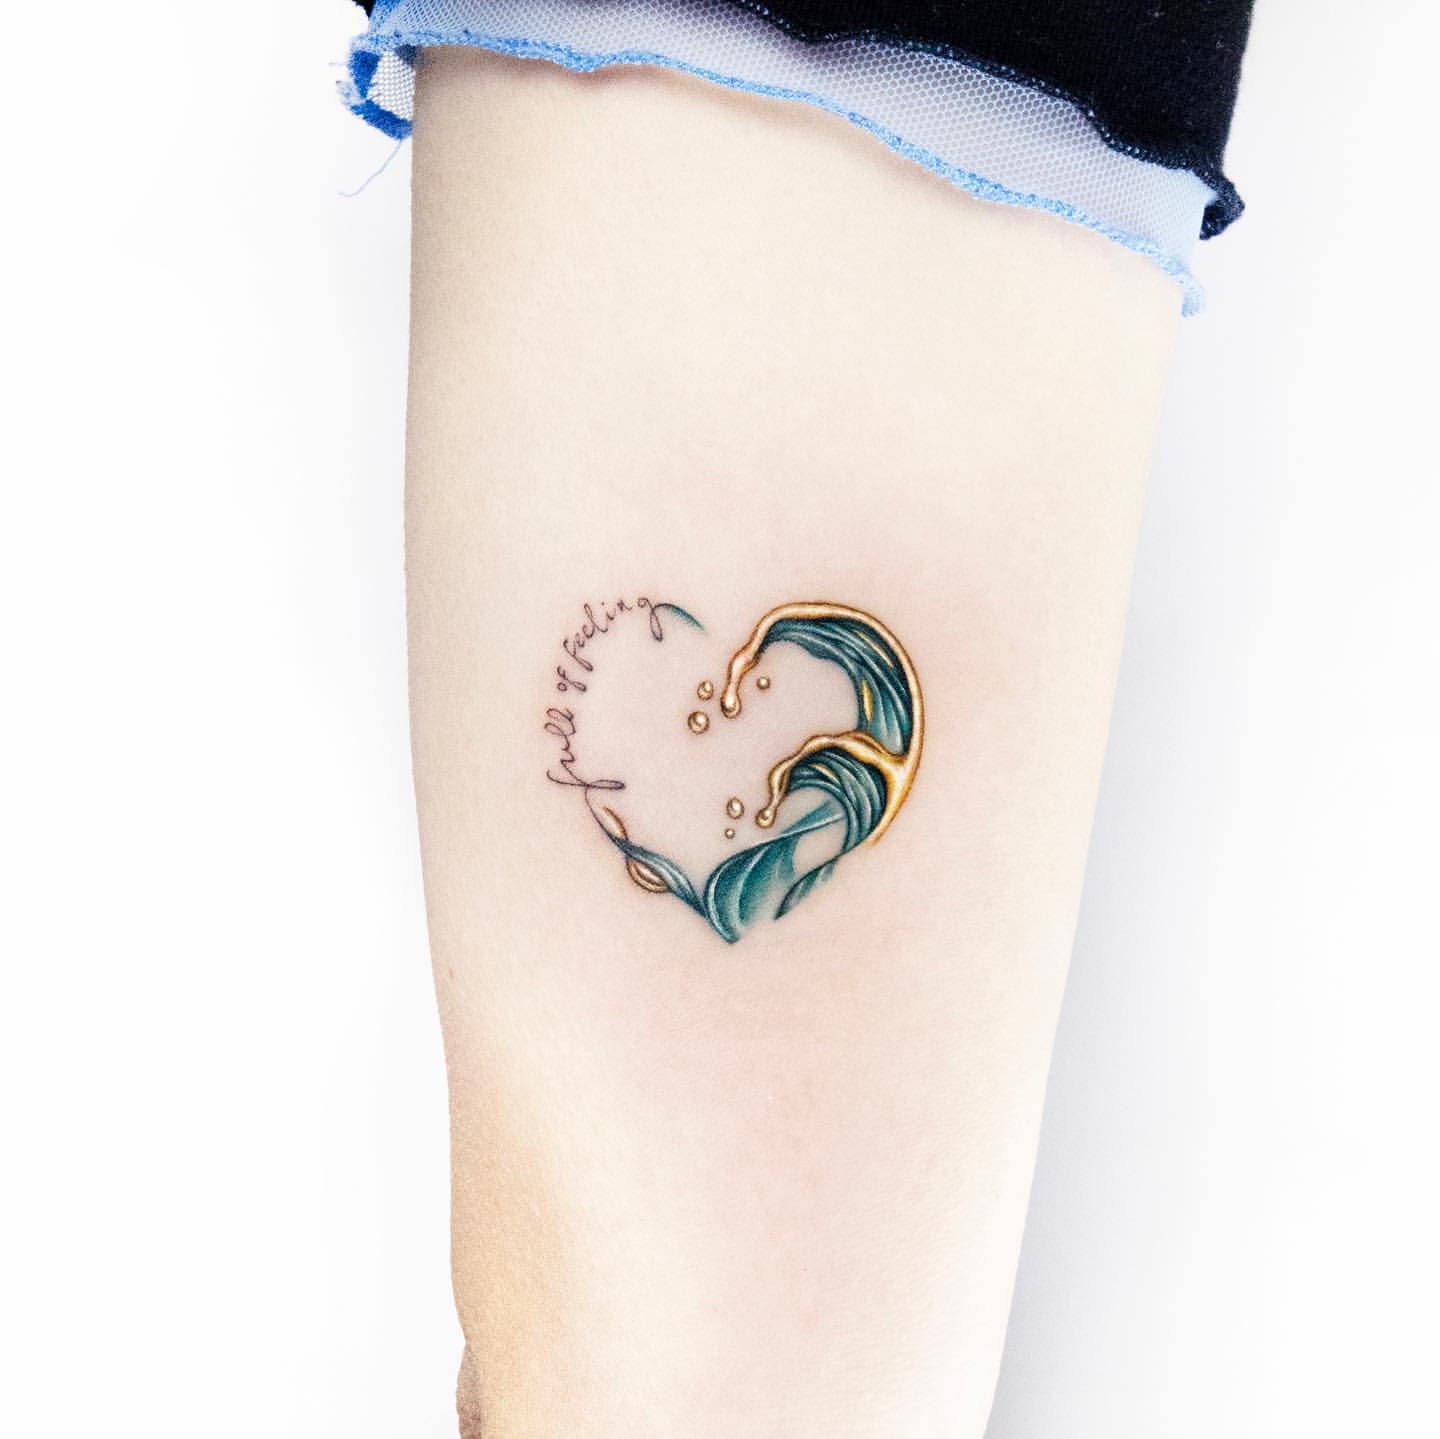 Ocean inspired tattoos